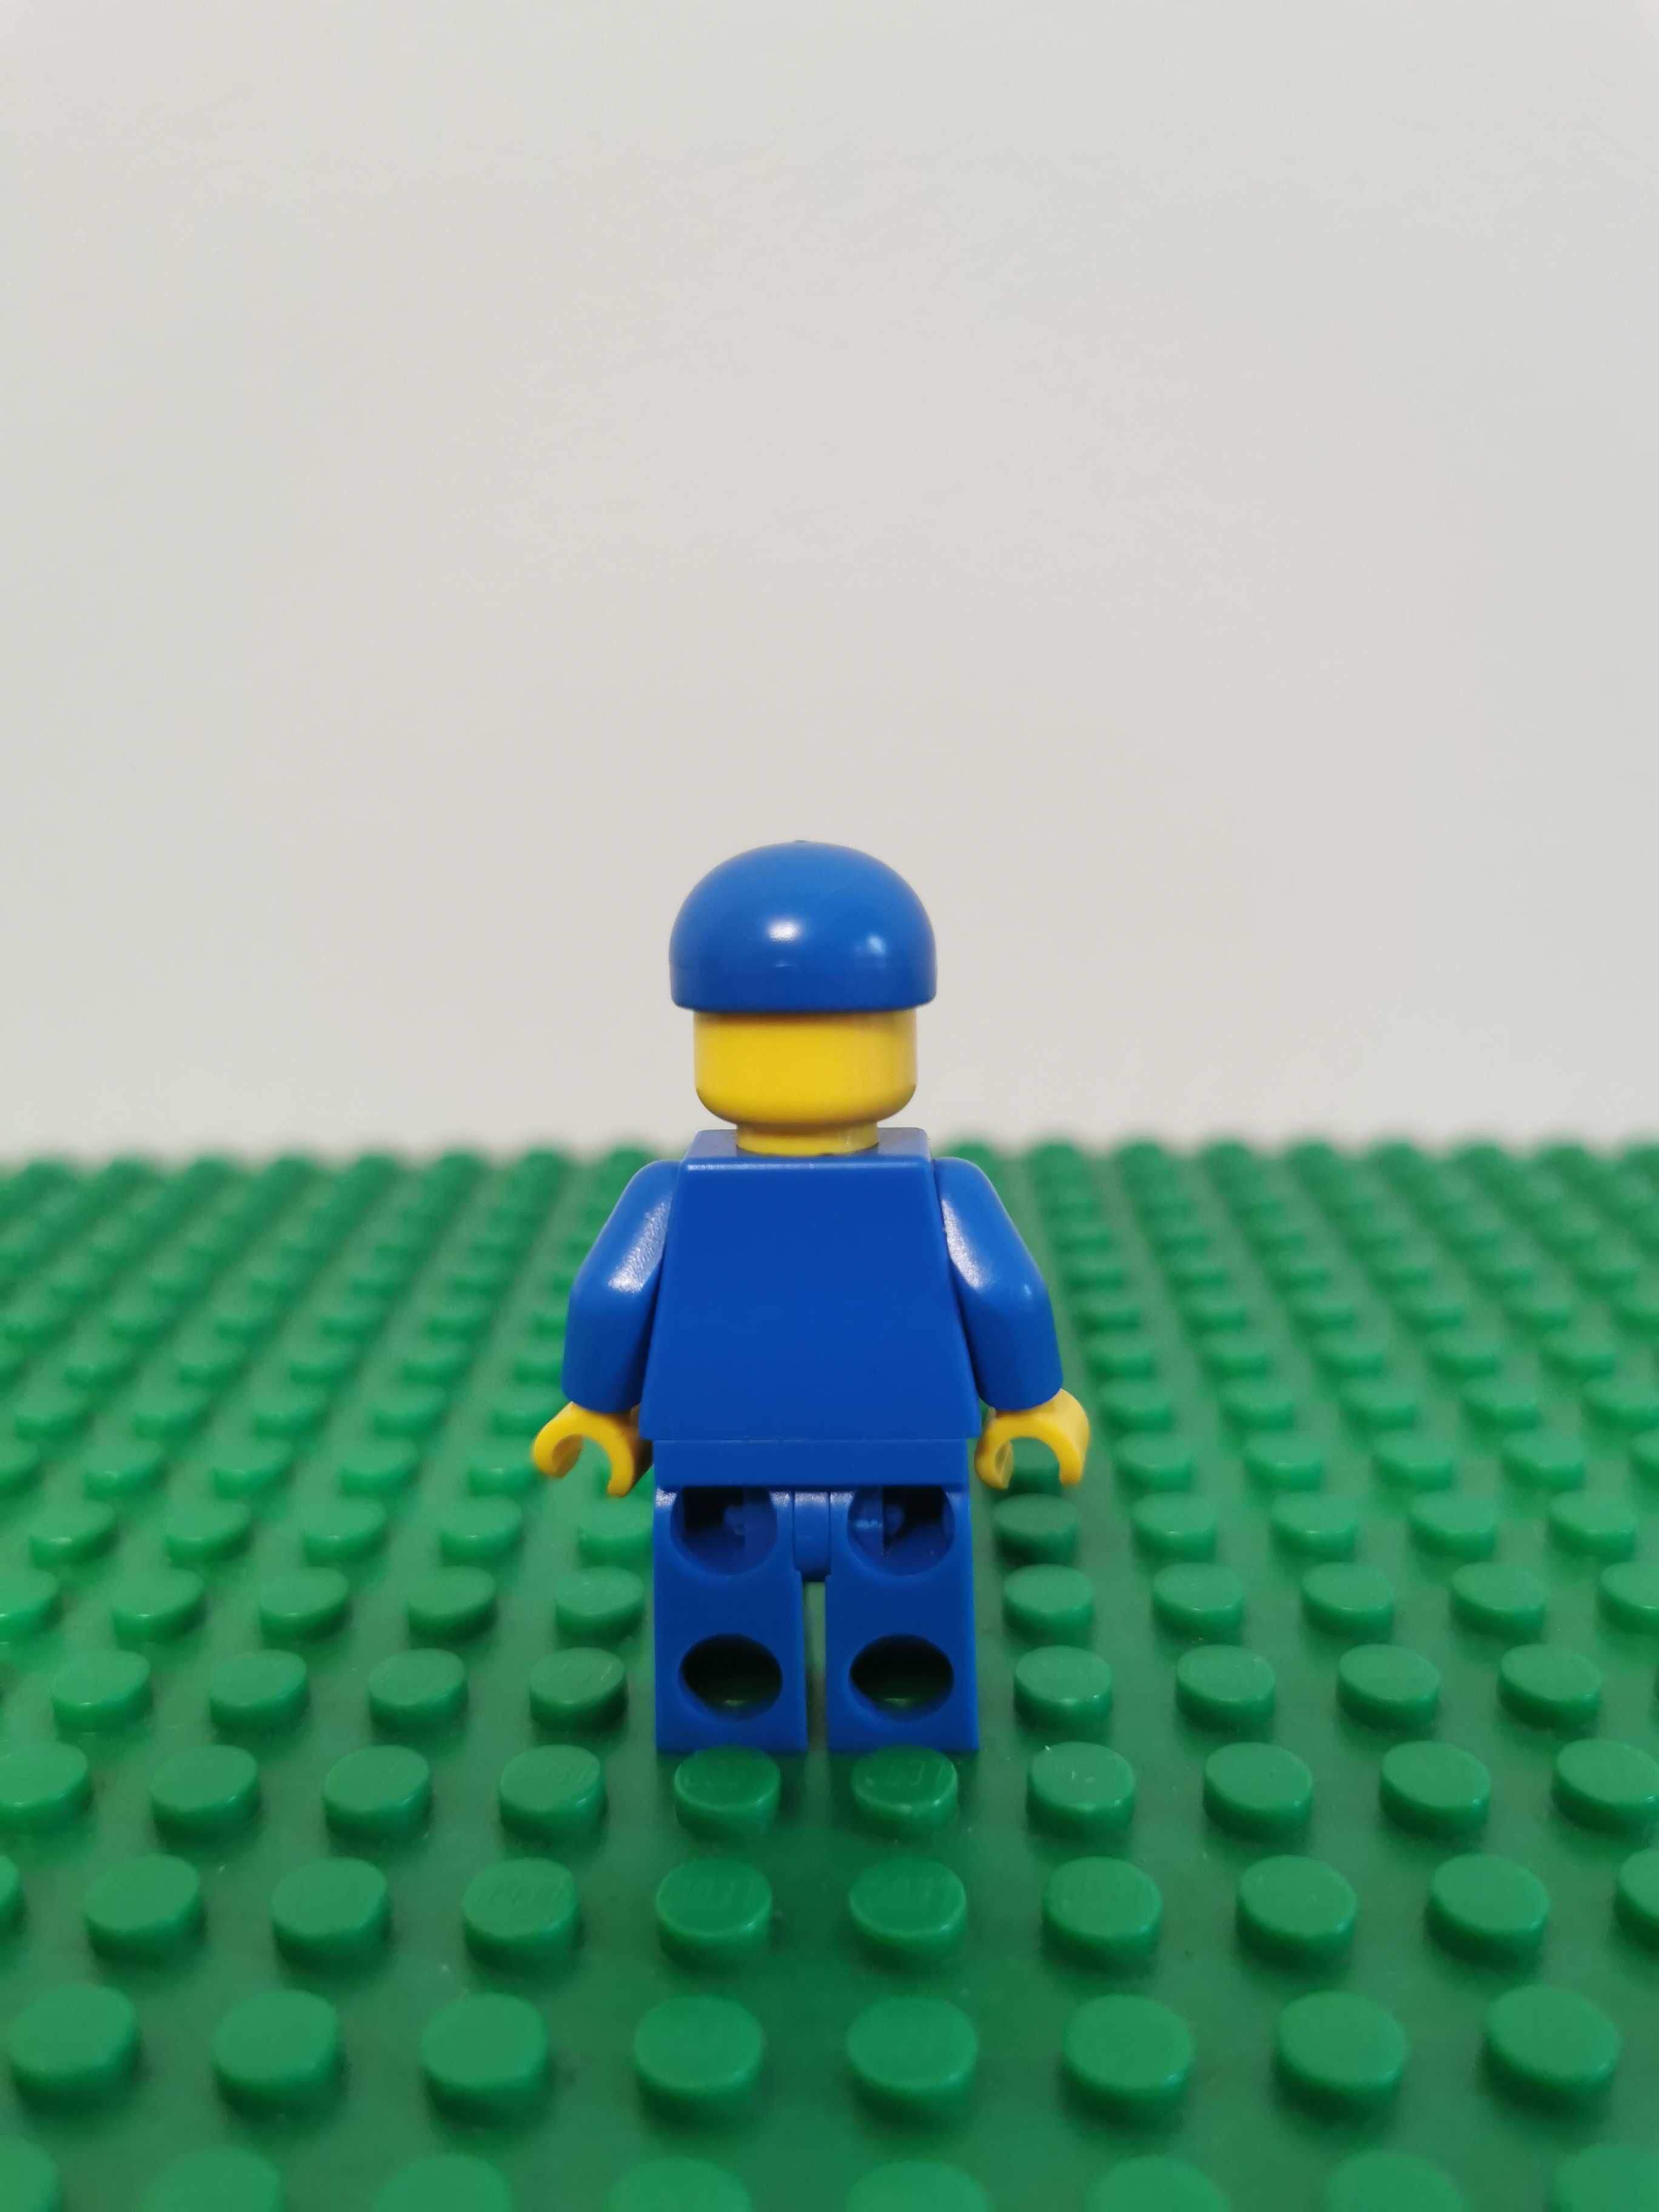 Członek załogi naziemnej wahadłowca figurka LEGO sp122